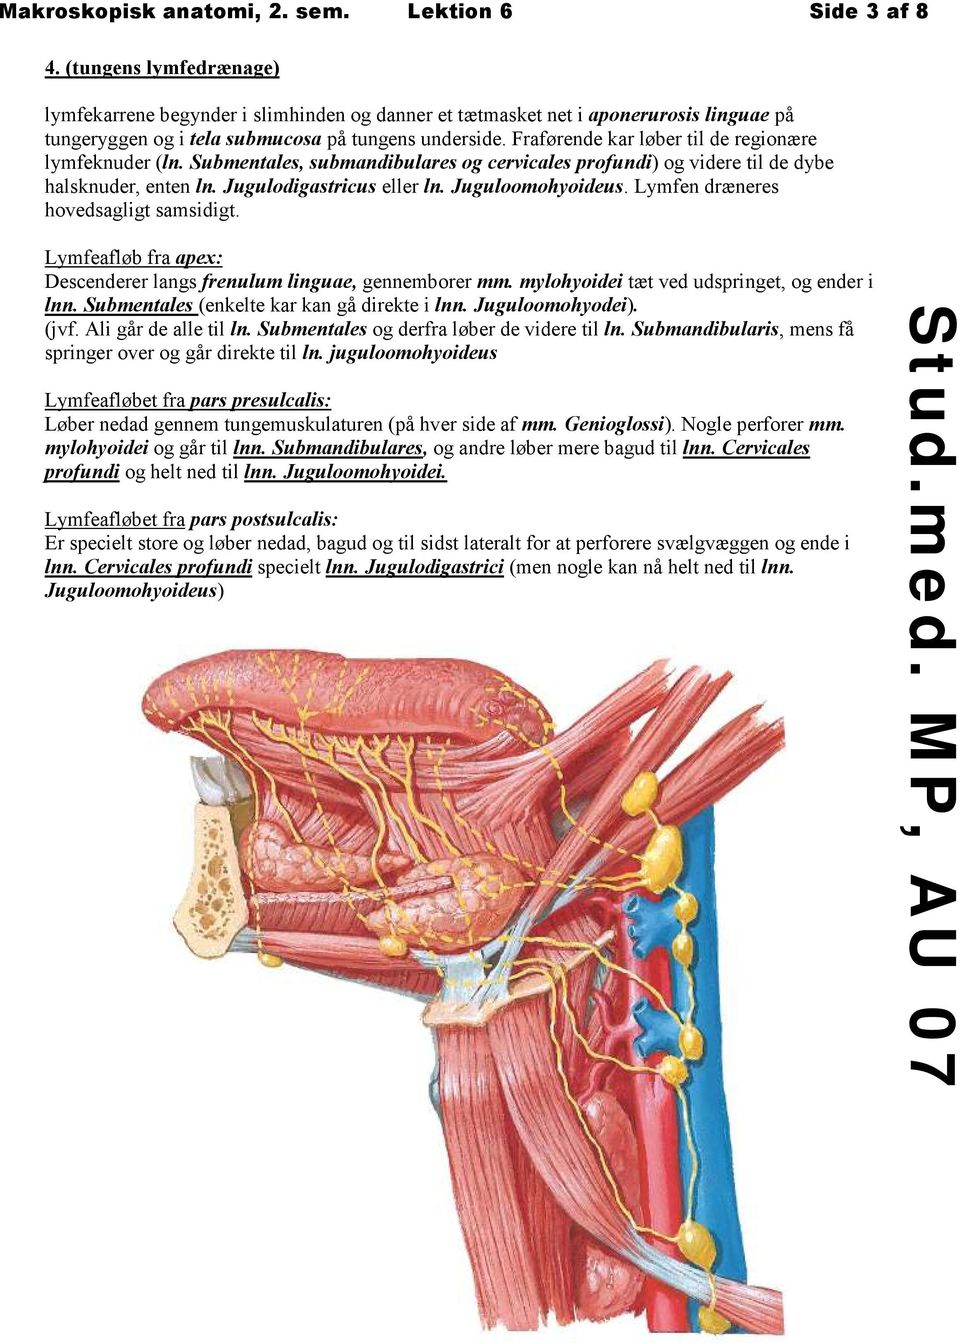 Fraførende kar løber til de regionære lymfeknuder (ln. Submentales, submandibulares og cervicales profundi) og videre til de dybe halsknuder, enten ln. Jugulodigastricus eller ln. Juguloomohyoideus.